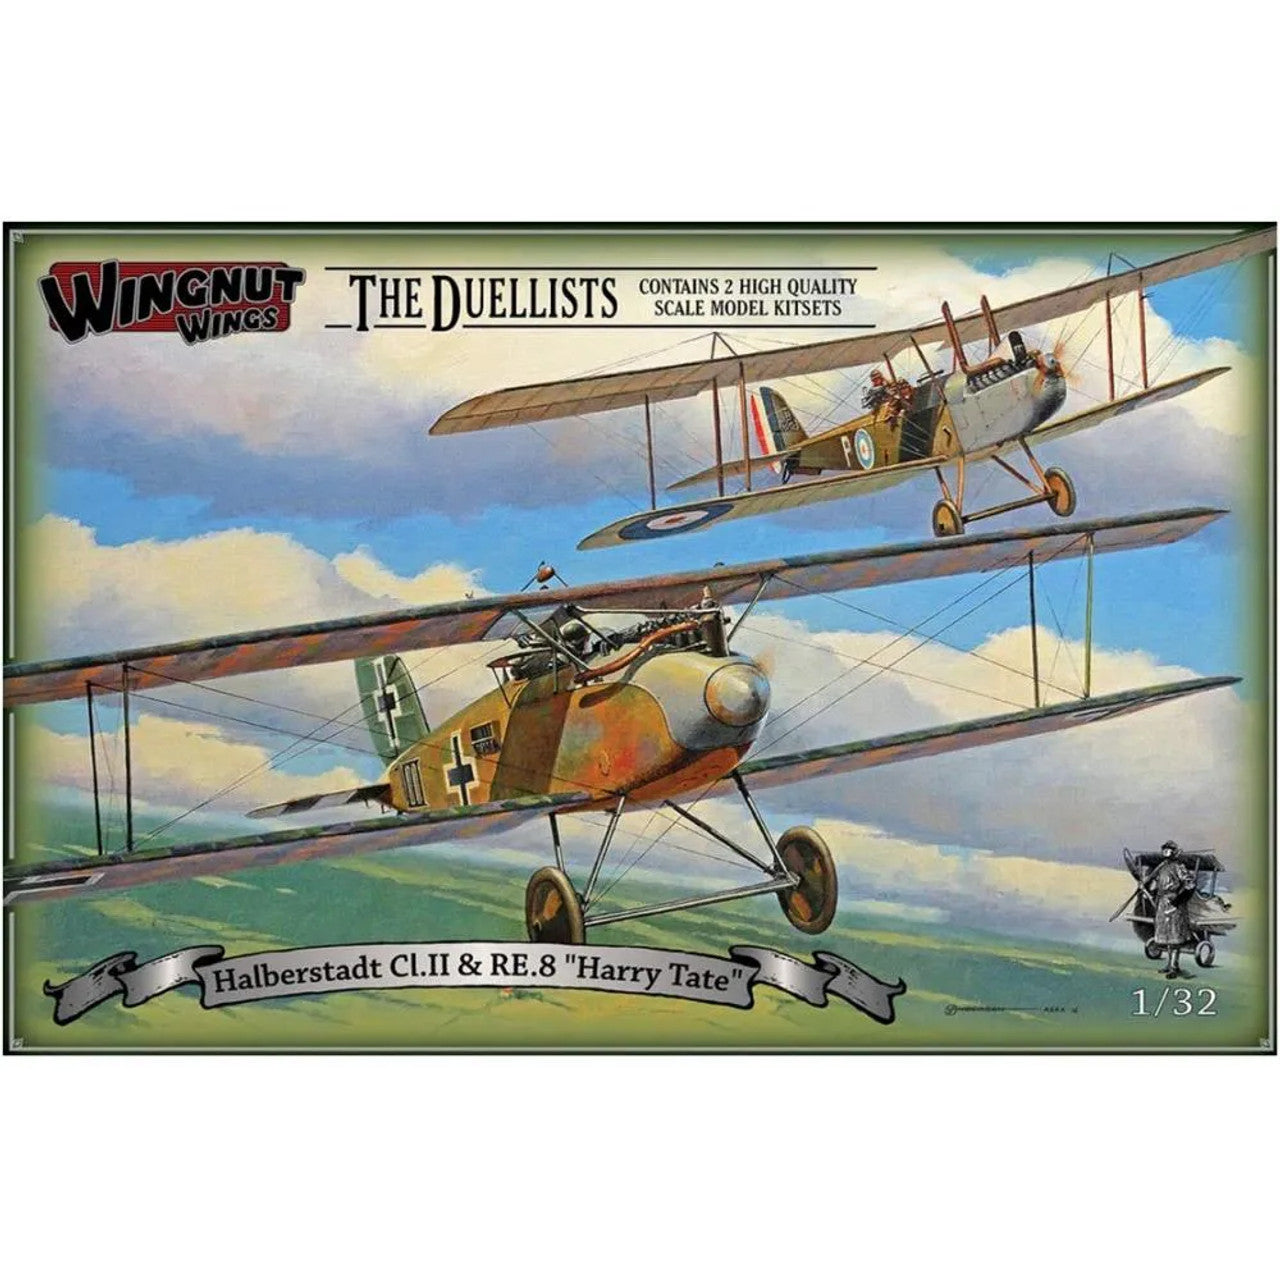 Halberstadt Cl. II & RE. b "Harry Tate" "The Duellists" 1/32 by Wingnut Wings